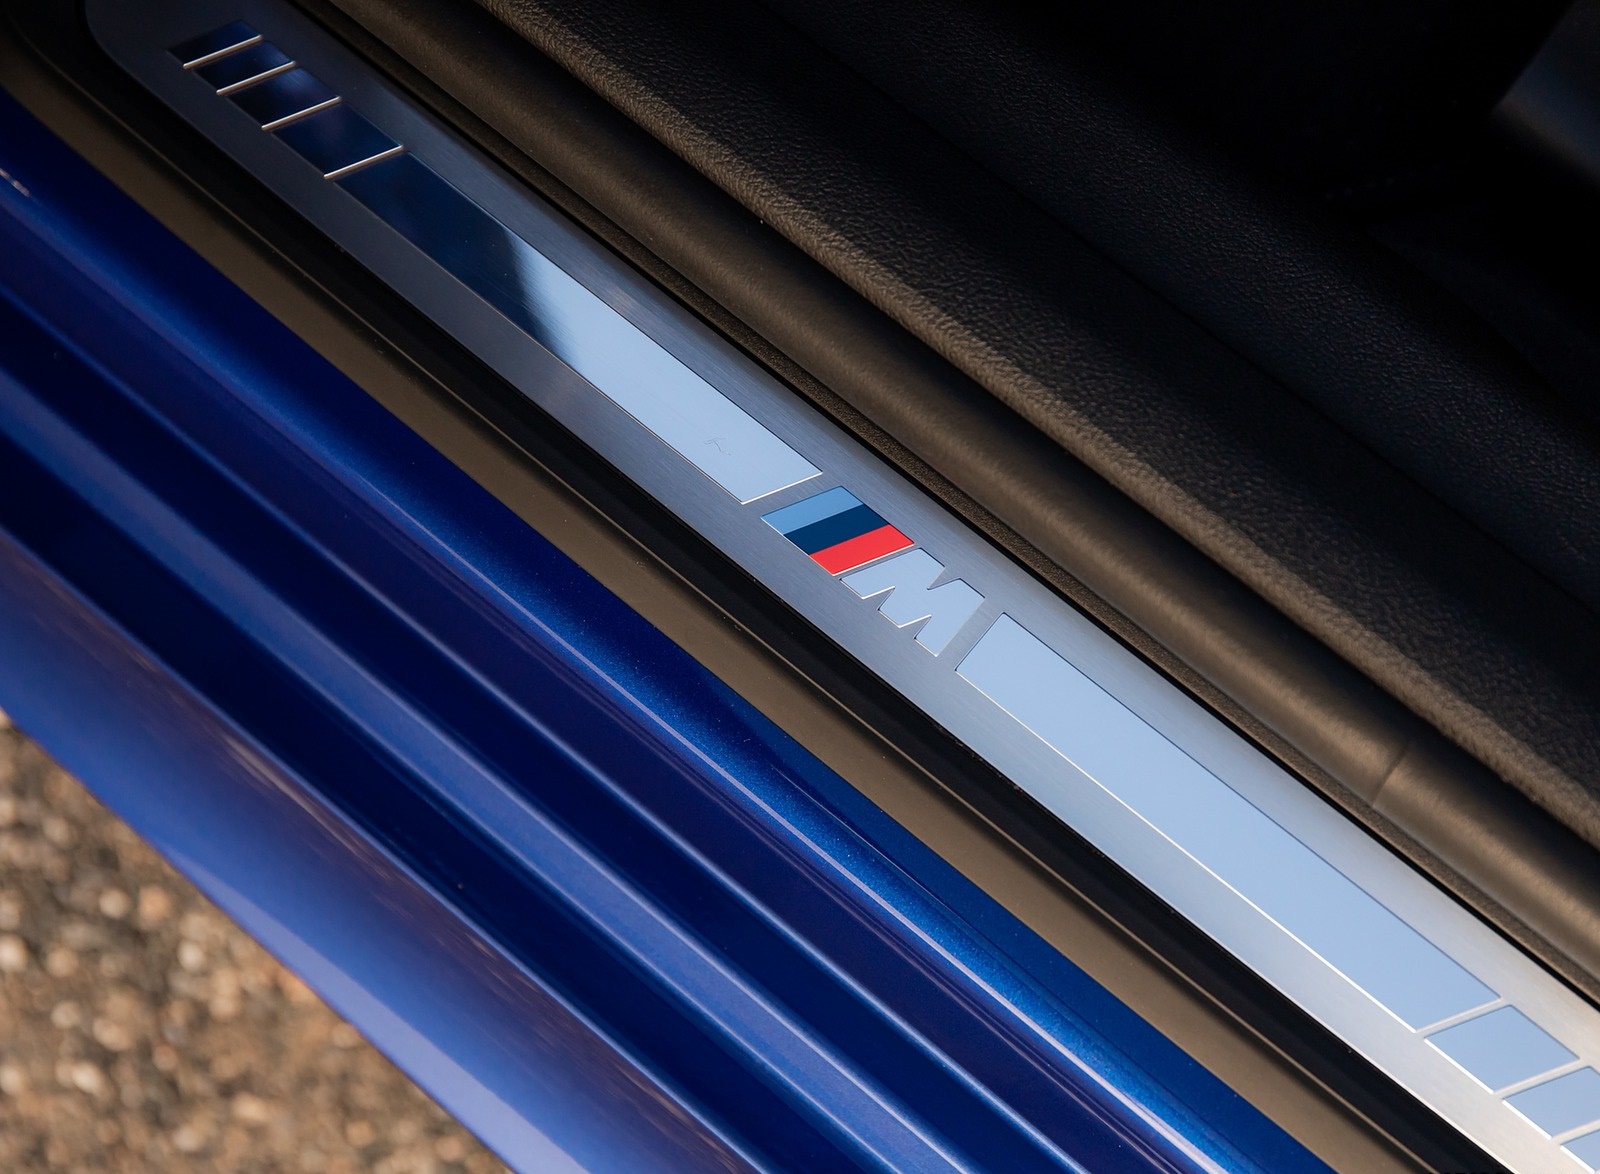 2019 BMW 3-Series Saloon 320d xDrive (UK-Spec) Door Sill Wallpapers #37 of 46